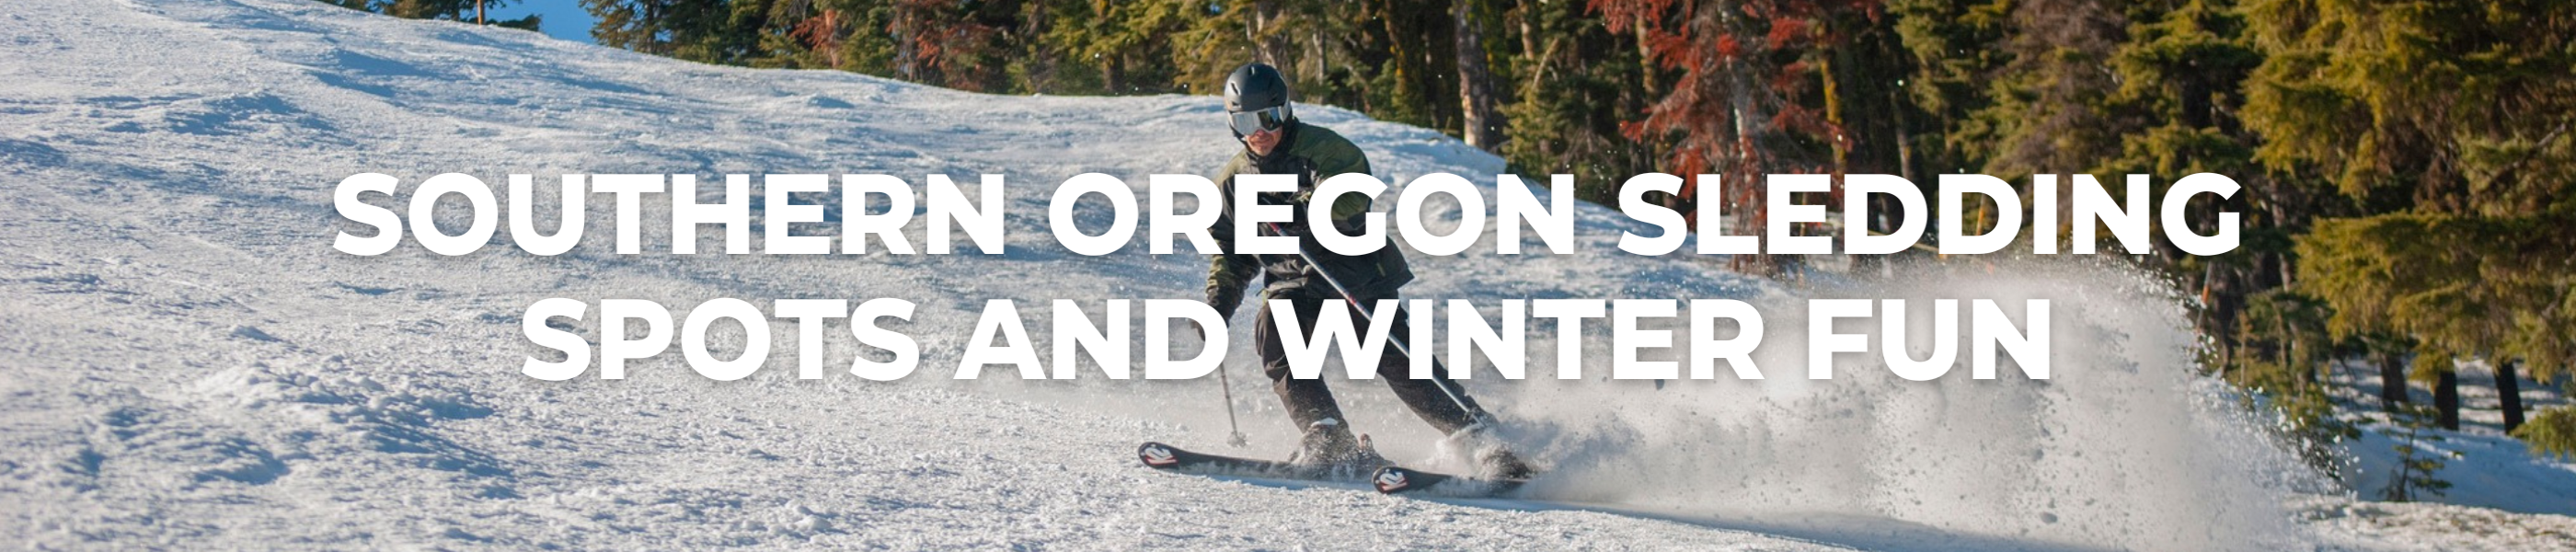 Southern Oregon Sledding Spots & Winter Fun